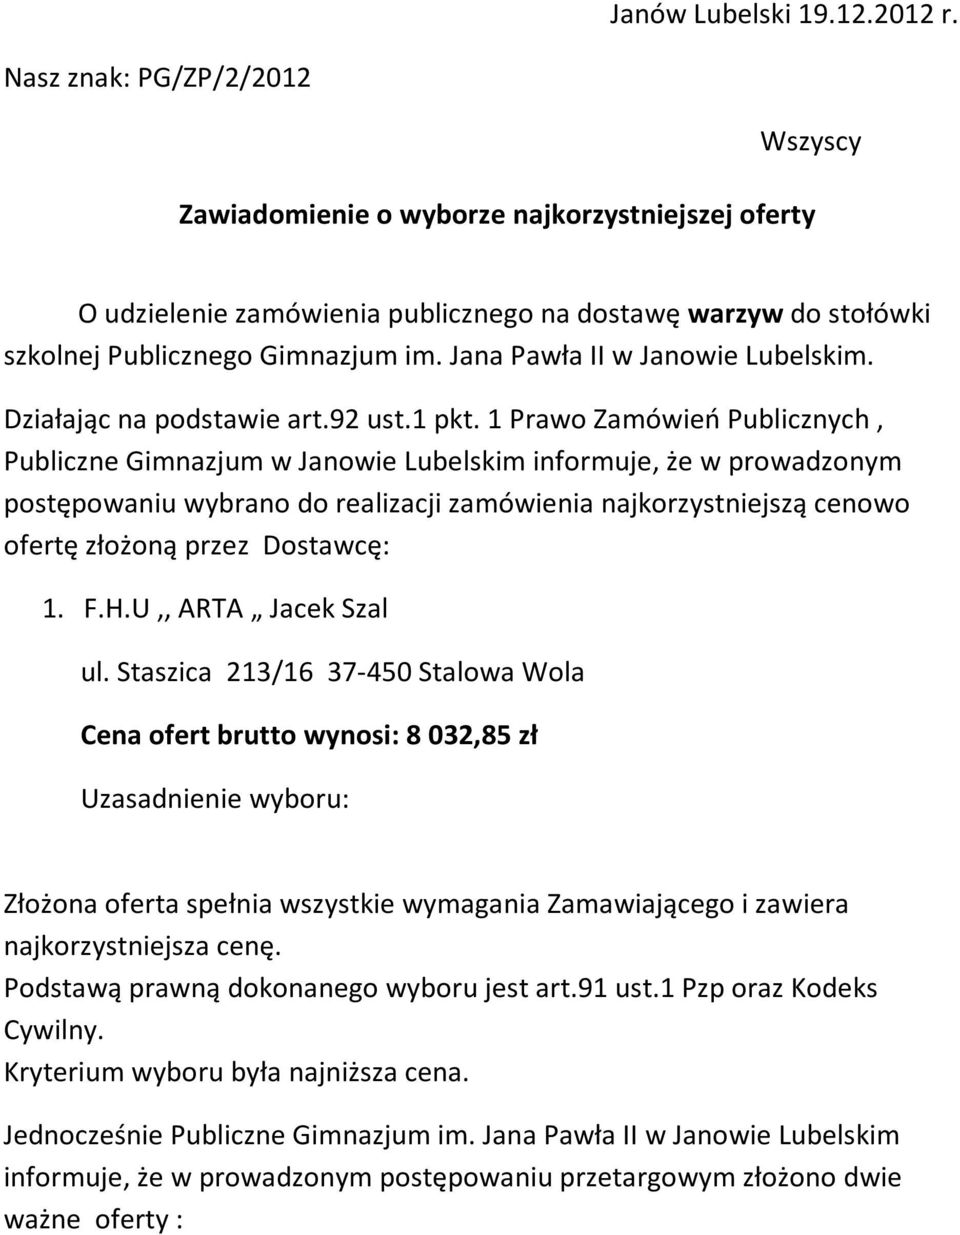 Jana Pawła II w Janowie Lubelskim. Działając na podstawie art.92 ust.1 pkt.